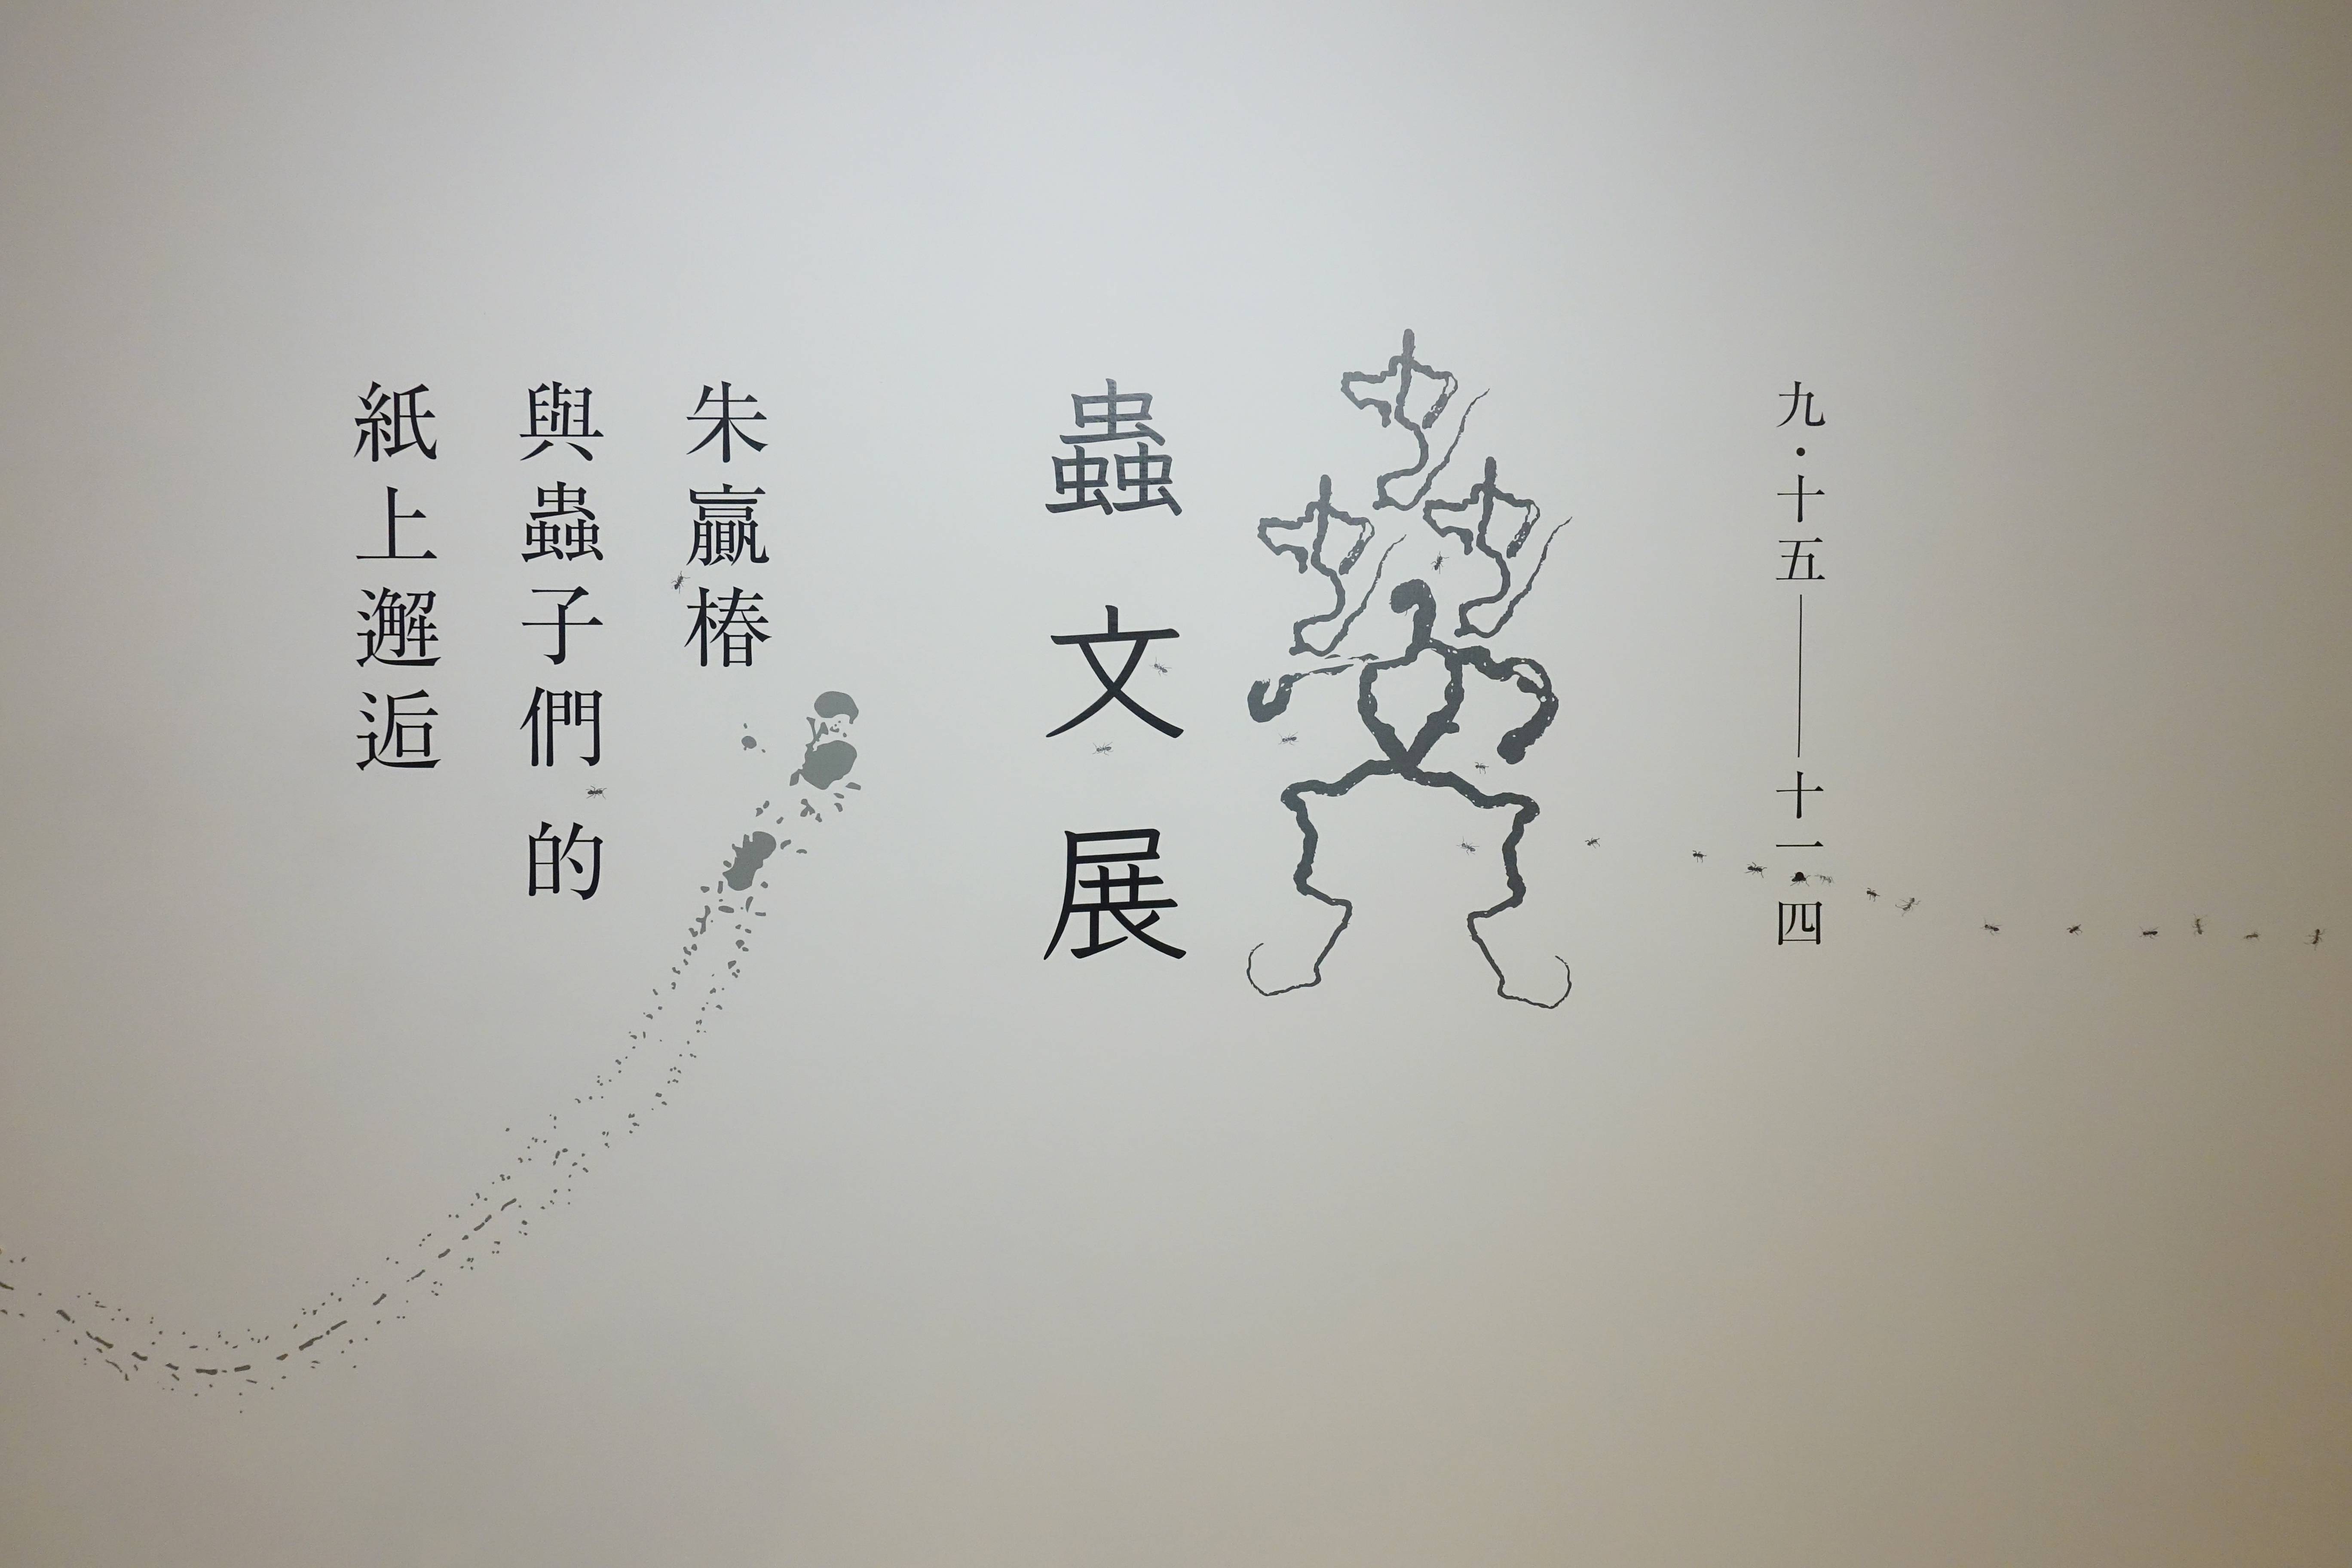 【蟲文展——朱贏椿與蟲子們的紙上邂逅】於雄獅星空展場入口主視覺。